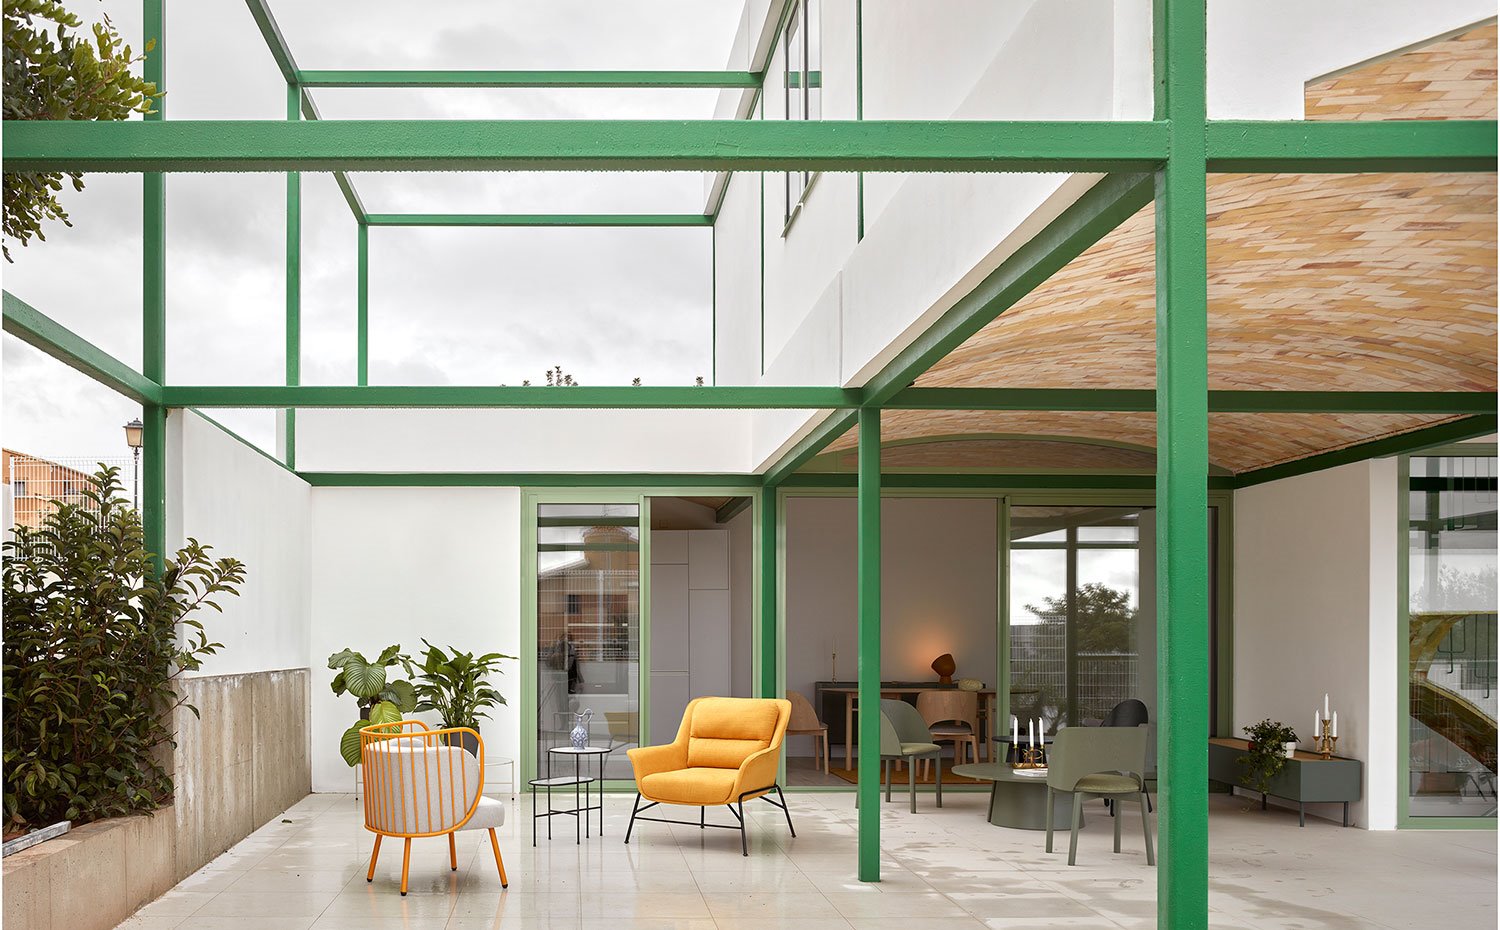 Terraza con zona cubierta y descubierta, con mobiliario de estilo nórdico, estructura metálica en verde y hormigón pintado en blanco